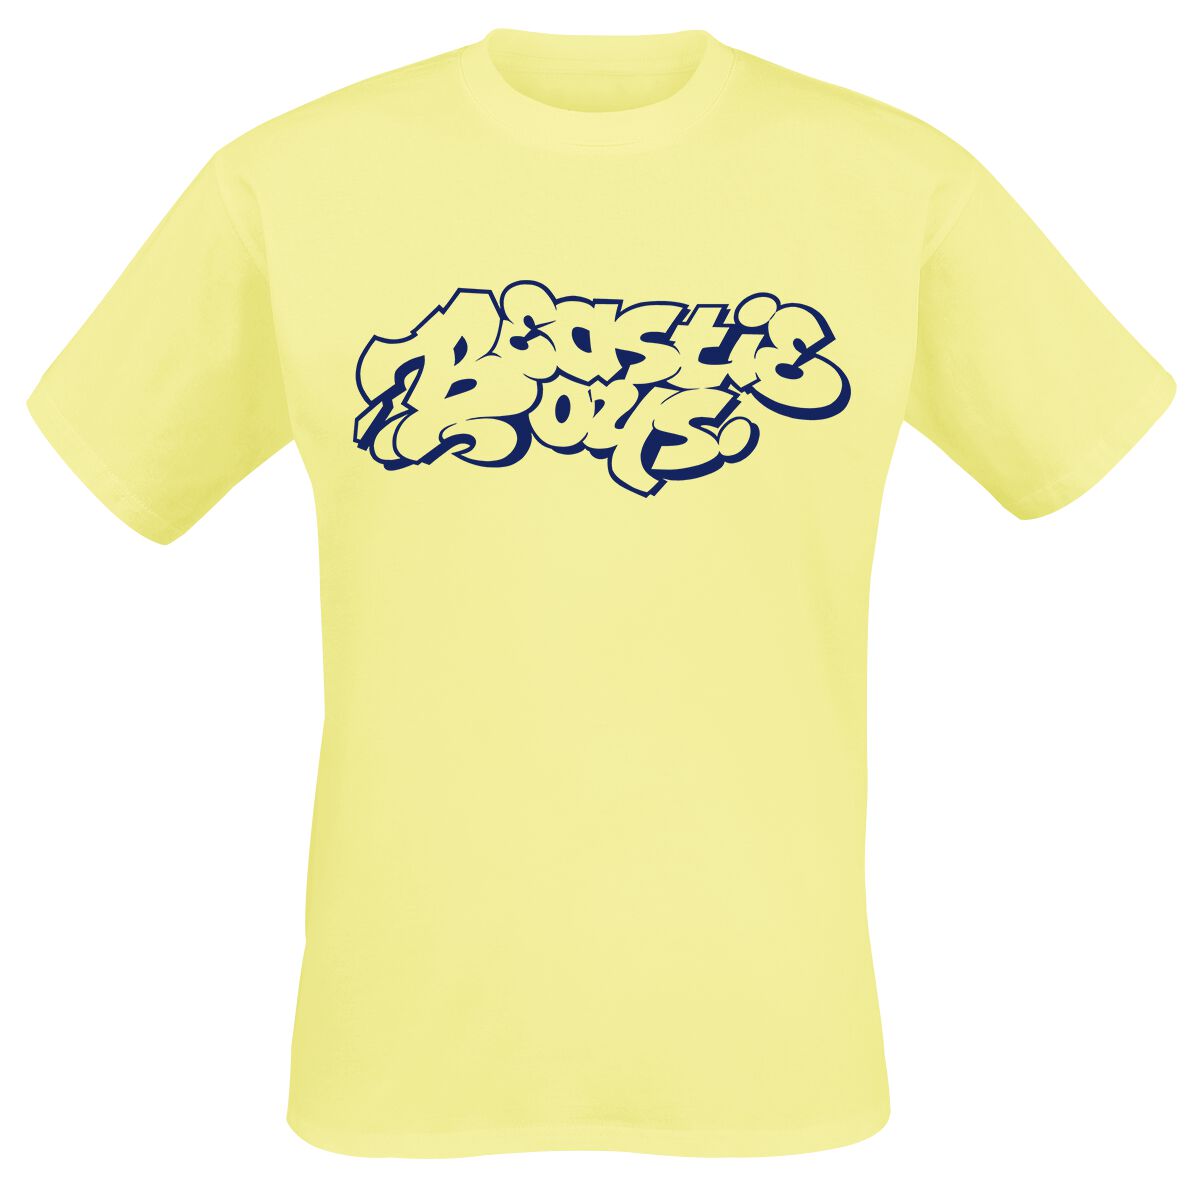 Beastie Boys T-Shirt - Graffiti Logo - S bis M - für Männer - Größe S - gelb  - Lizenziertes Merchandise!